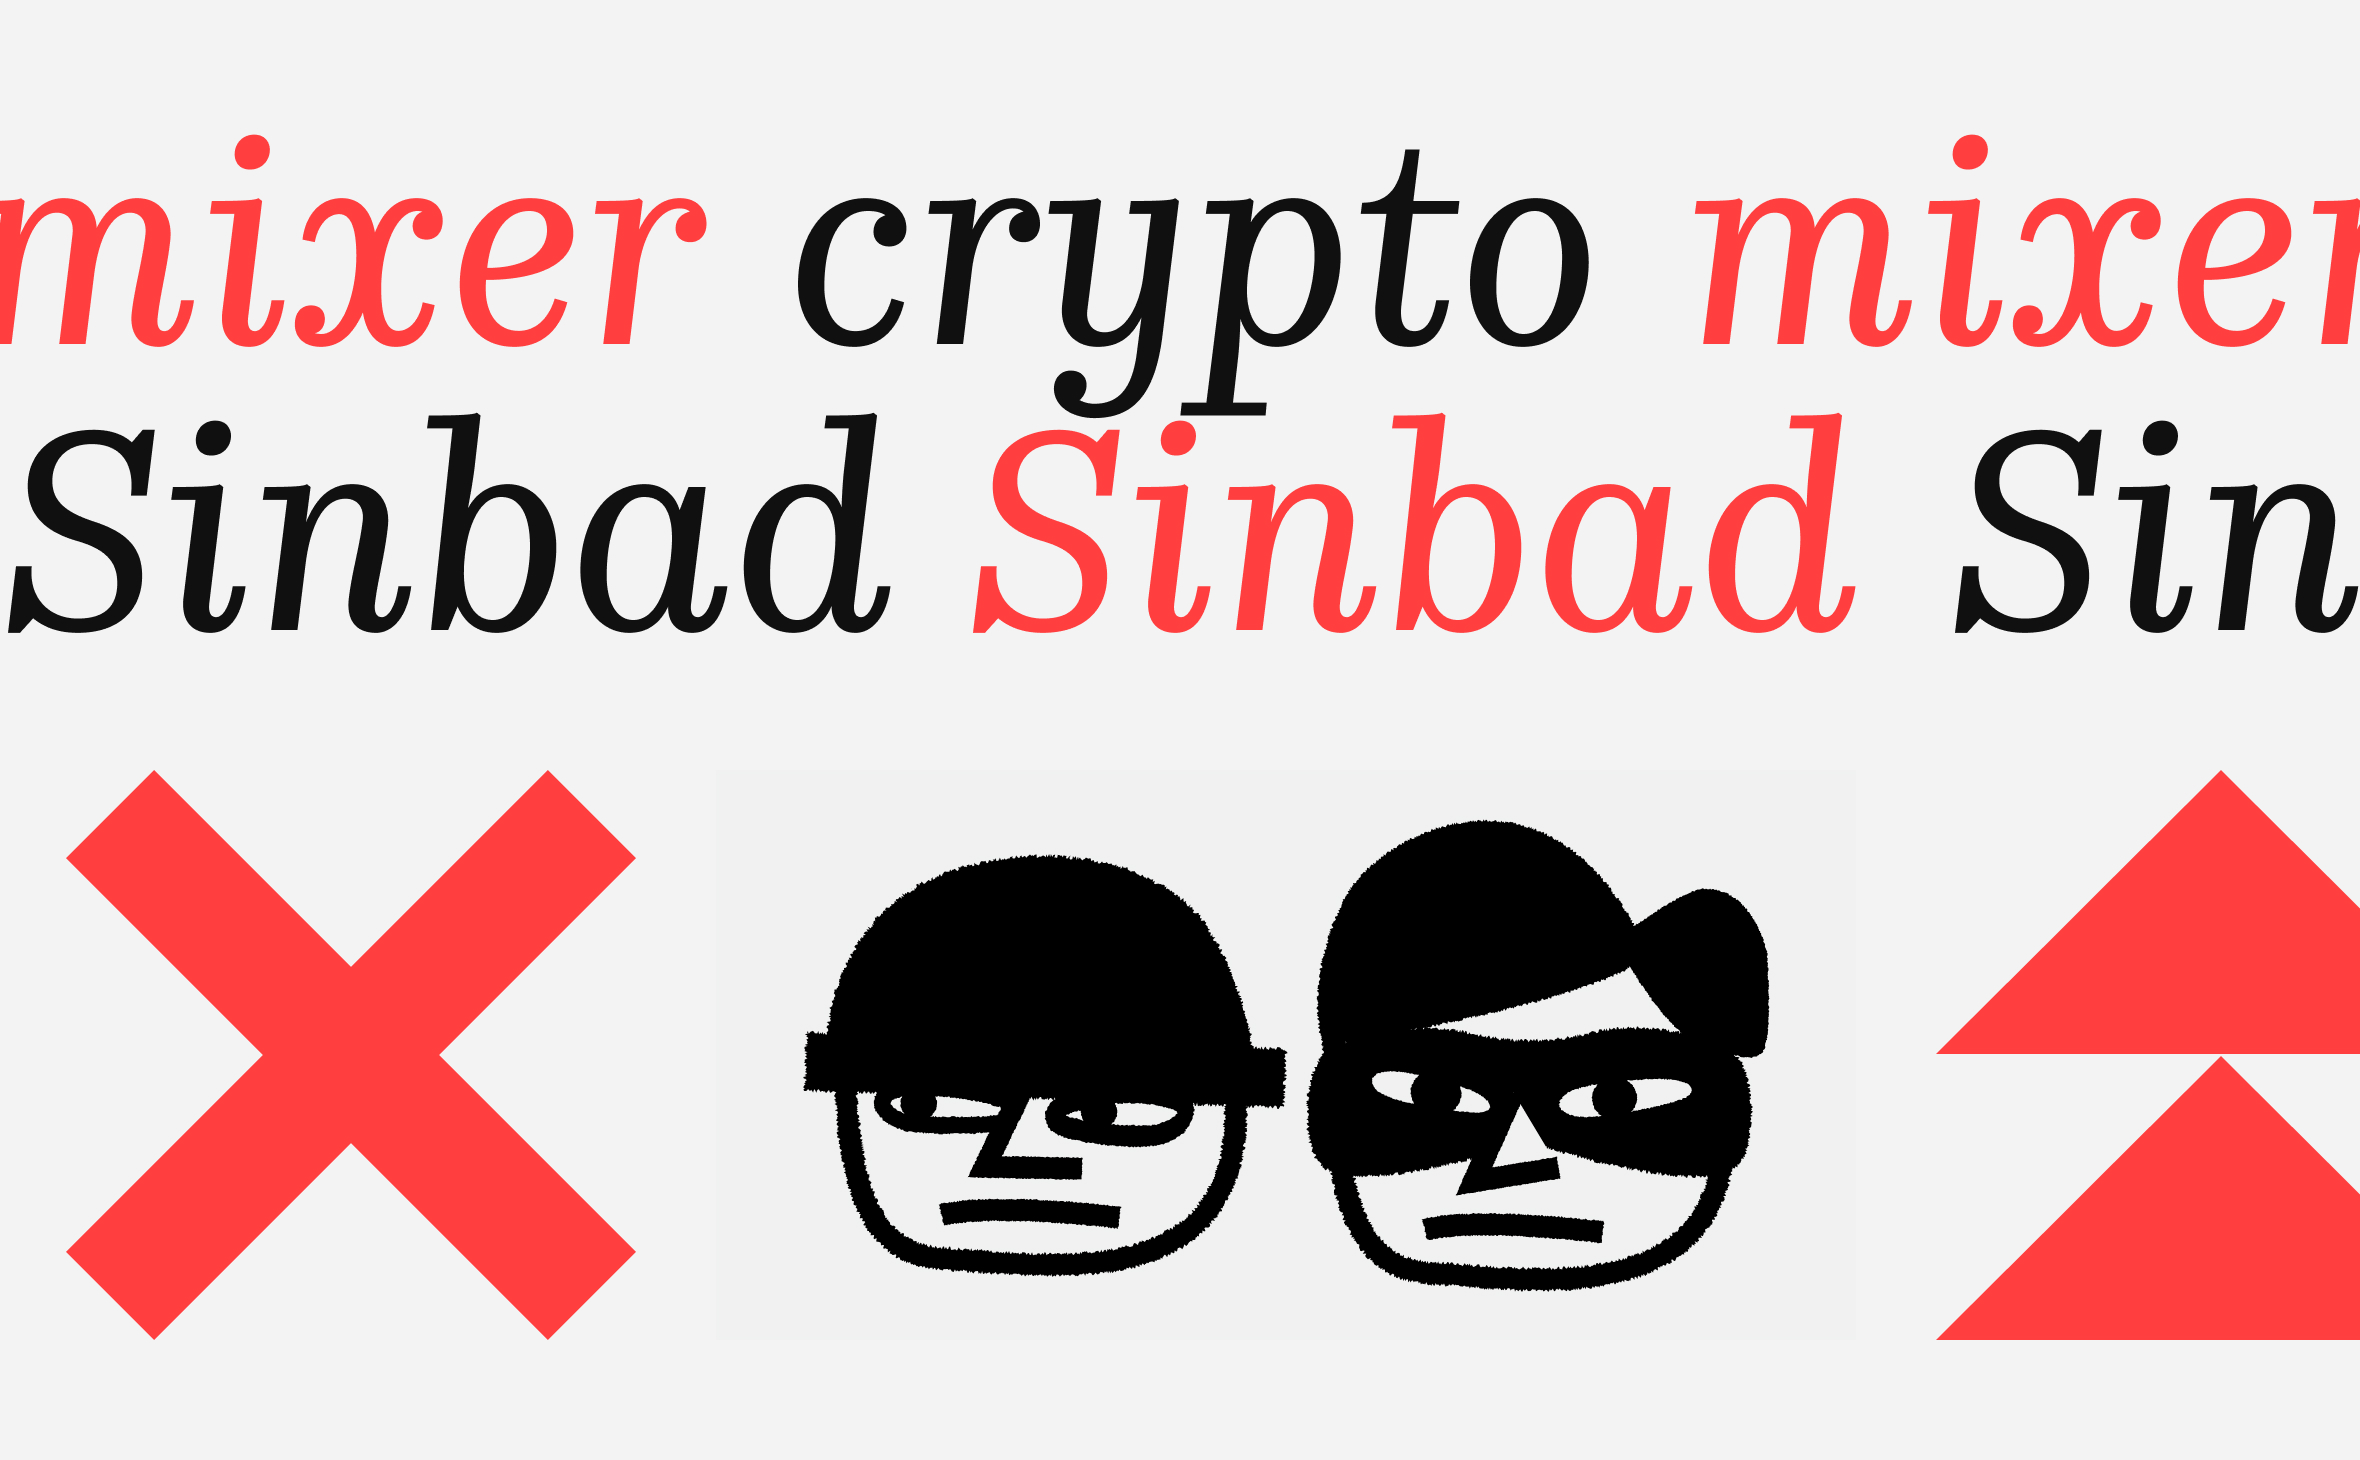 Что такое криптовалютный миксер Sinbad. Почему он попал под санкции :: РБК.Крипто